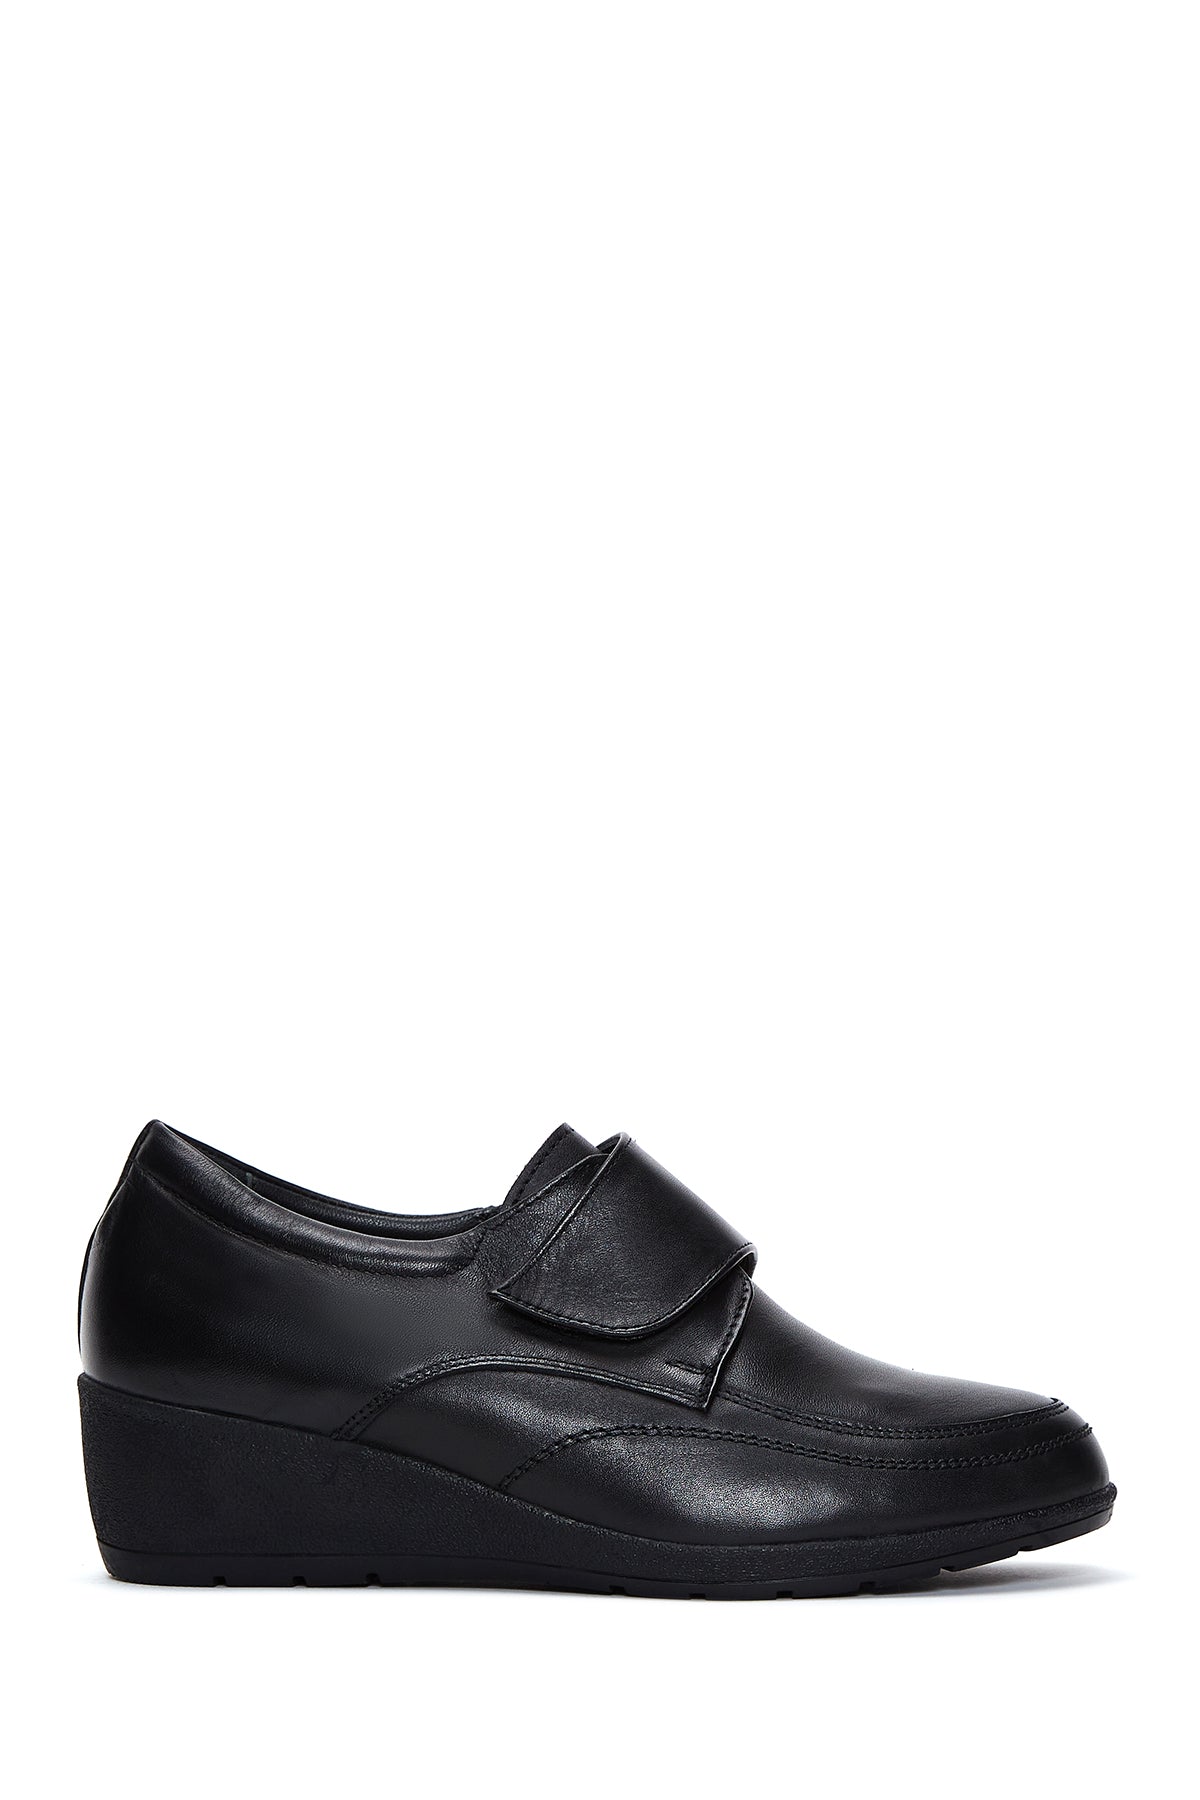 Kadın Siyah Deri Dolgu Topuk Comfort Ayakkabı 23WFD411118 | Derimod